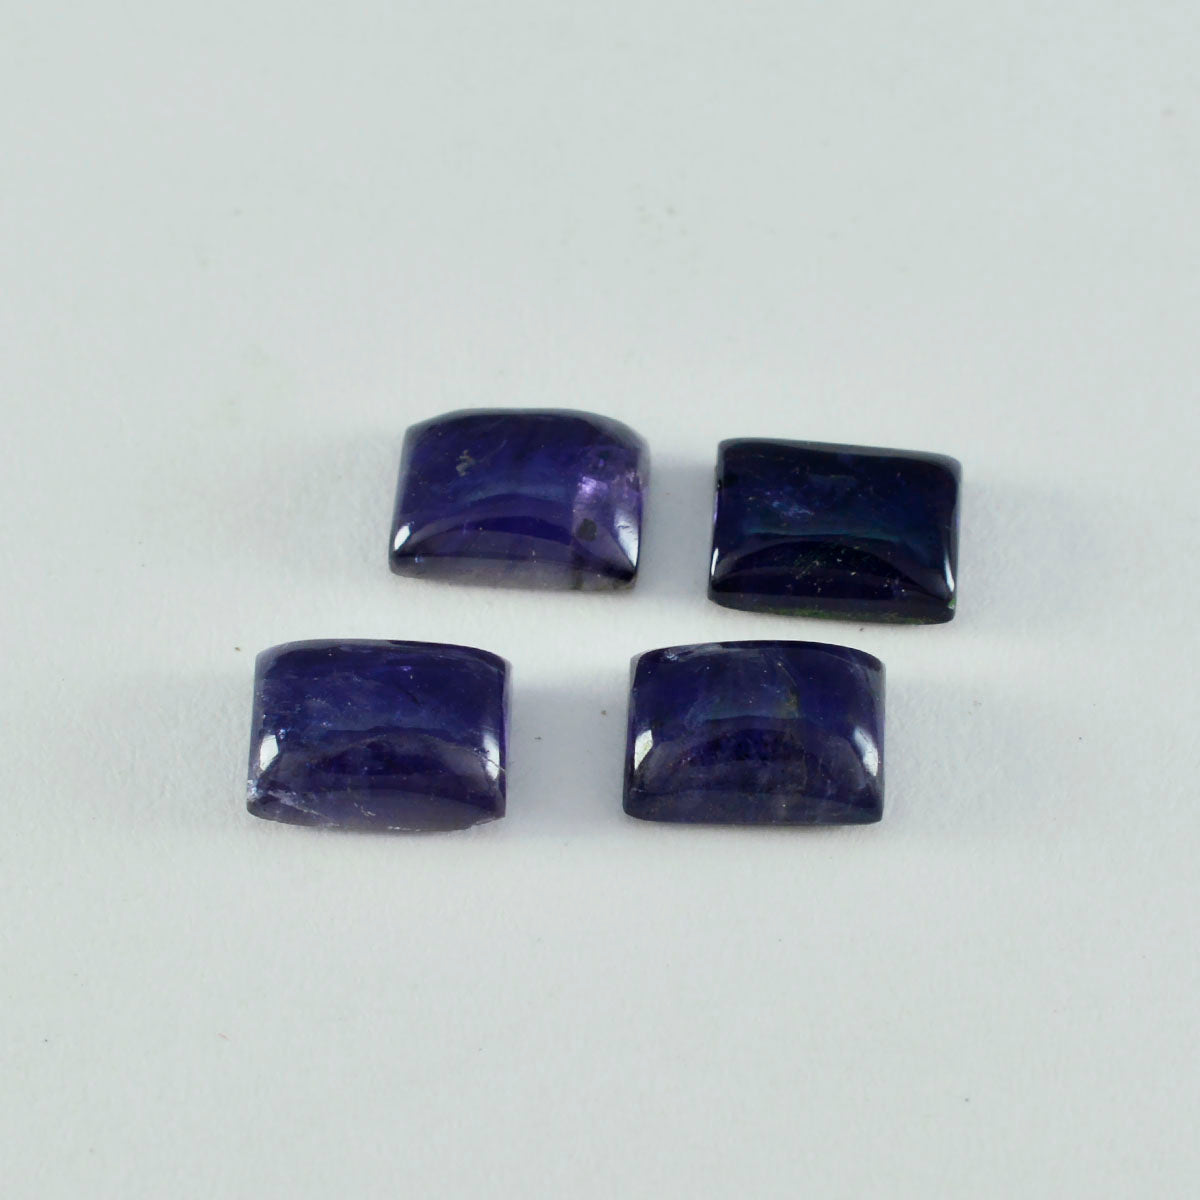 Riyogems 1PC Blue Iolite Cabochon 8x10 mm Octagon Shape A+ Quality Loose Gemstone